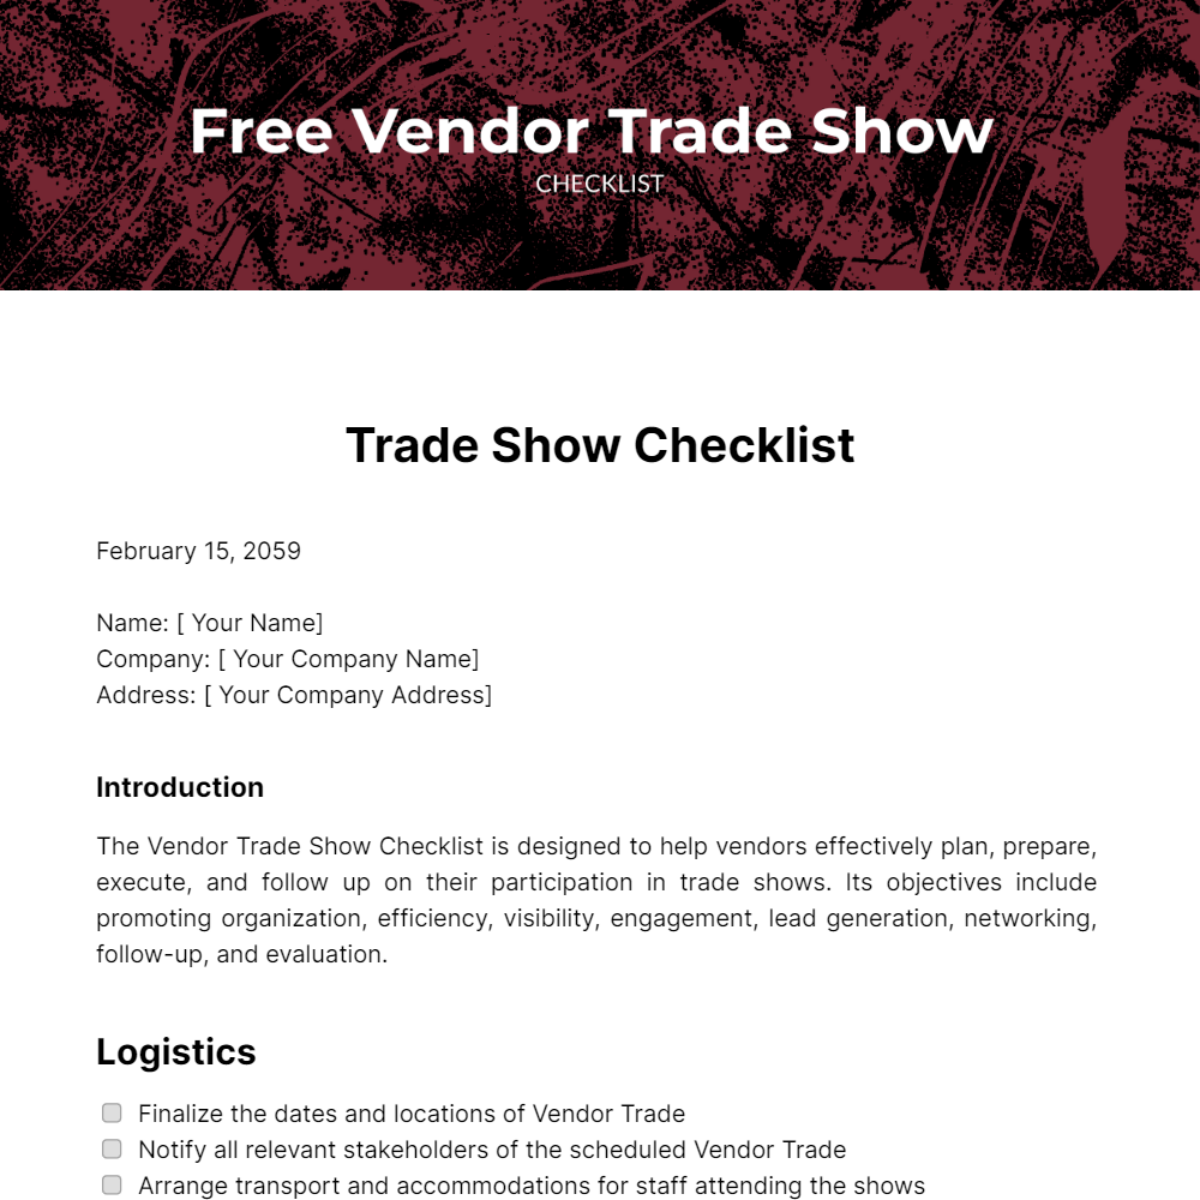 Free Vendor Trade Show Checklist Template